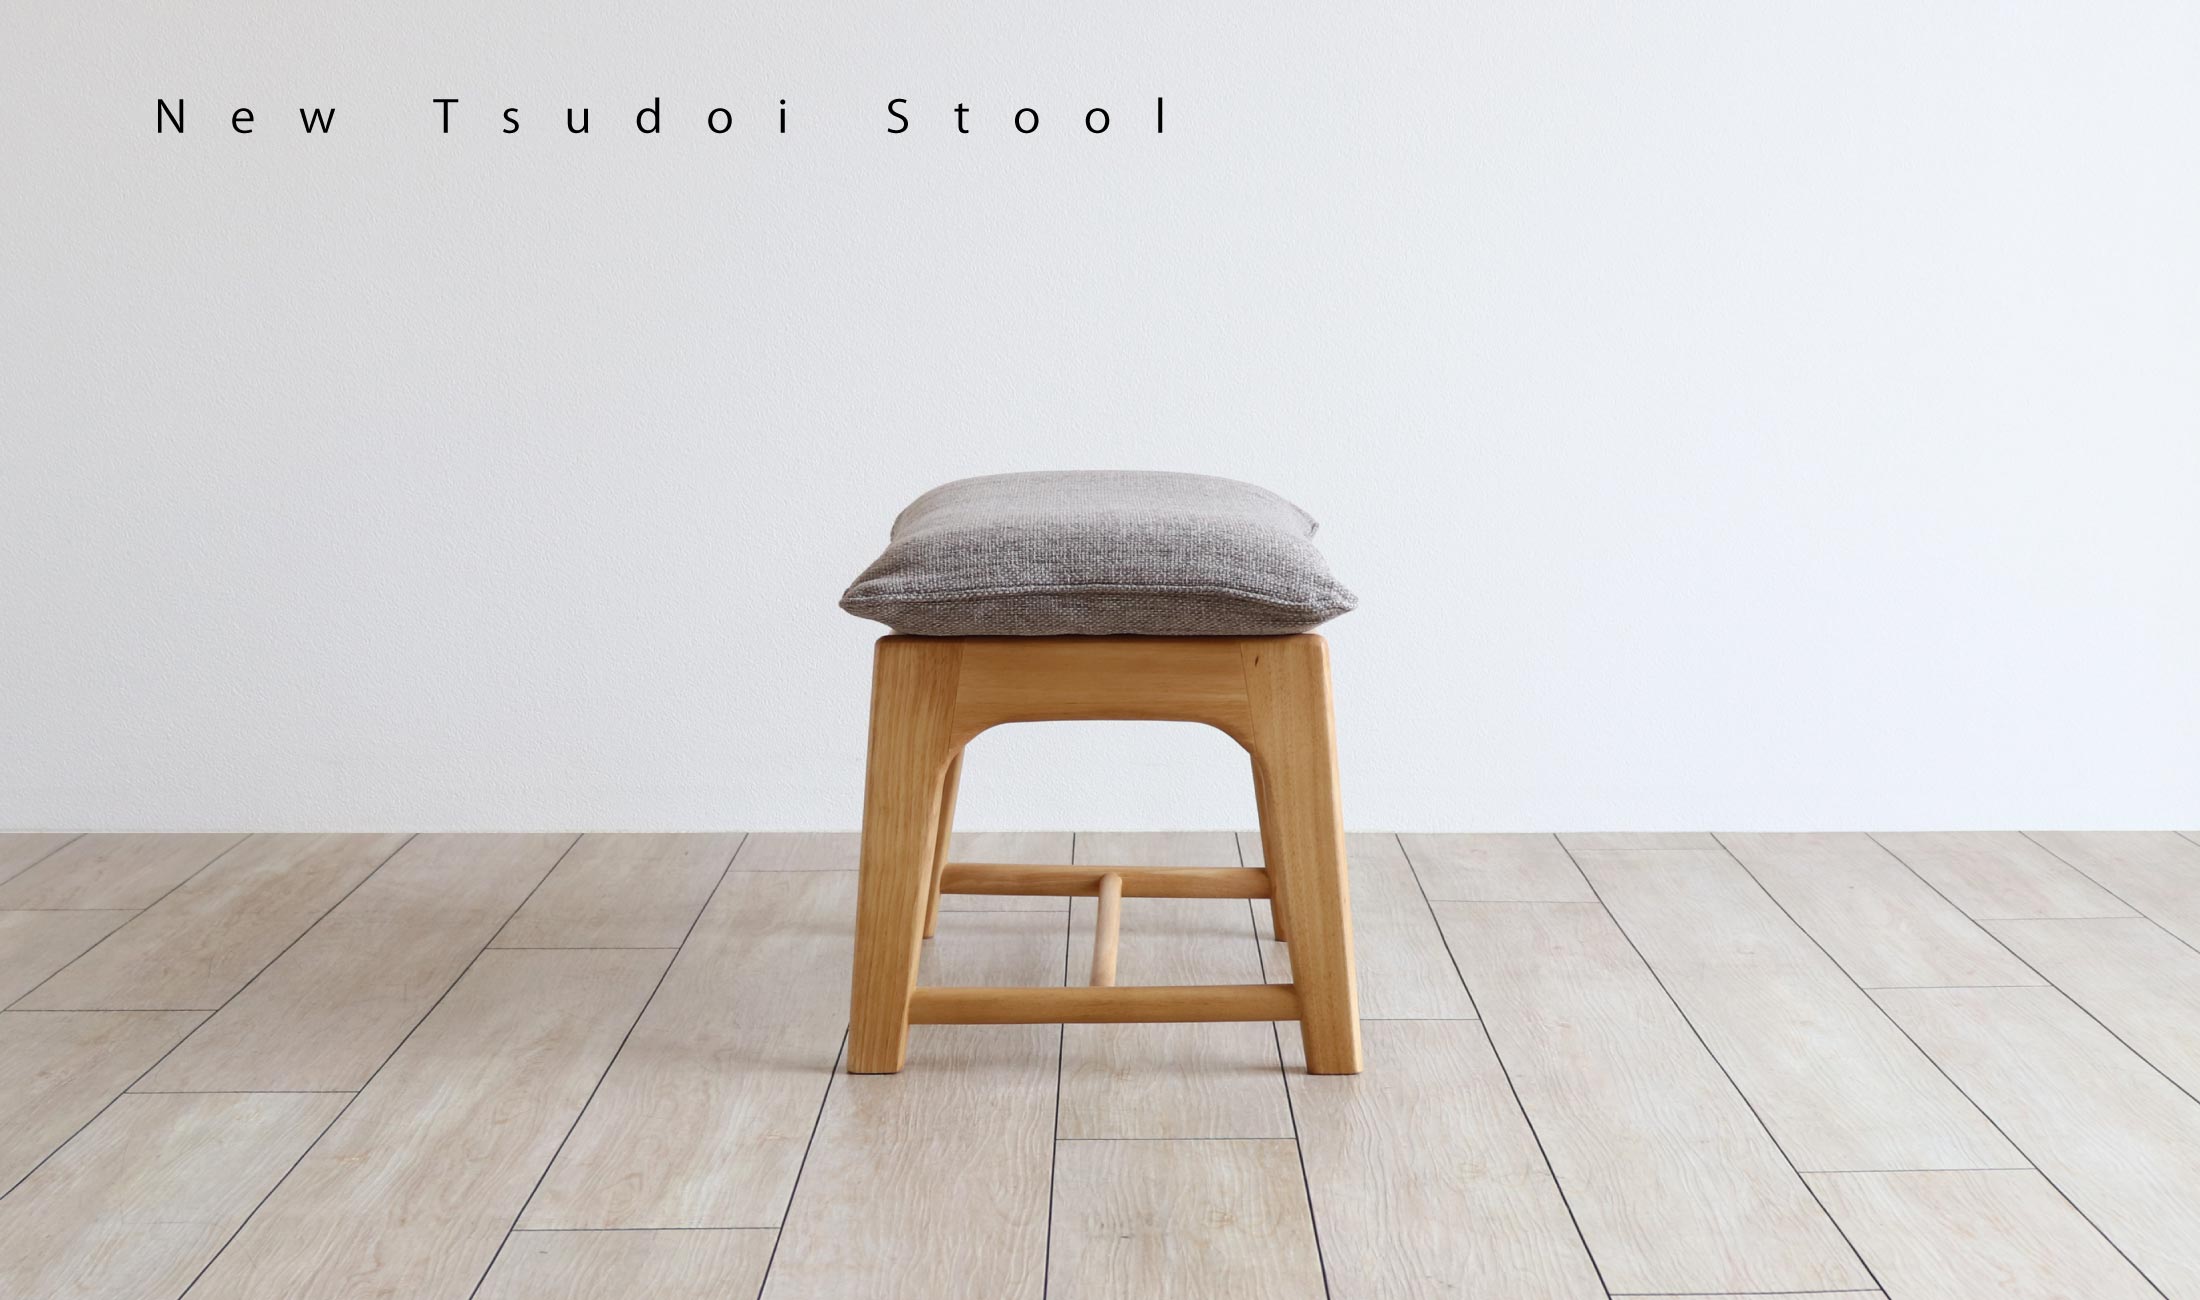 NewTsudoiニュー集い スツール：クッションのやさしい座り心地が魅力・ラバーウッド材